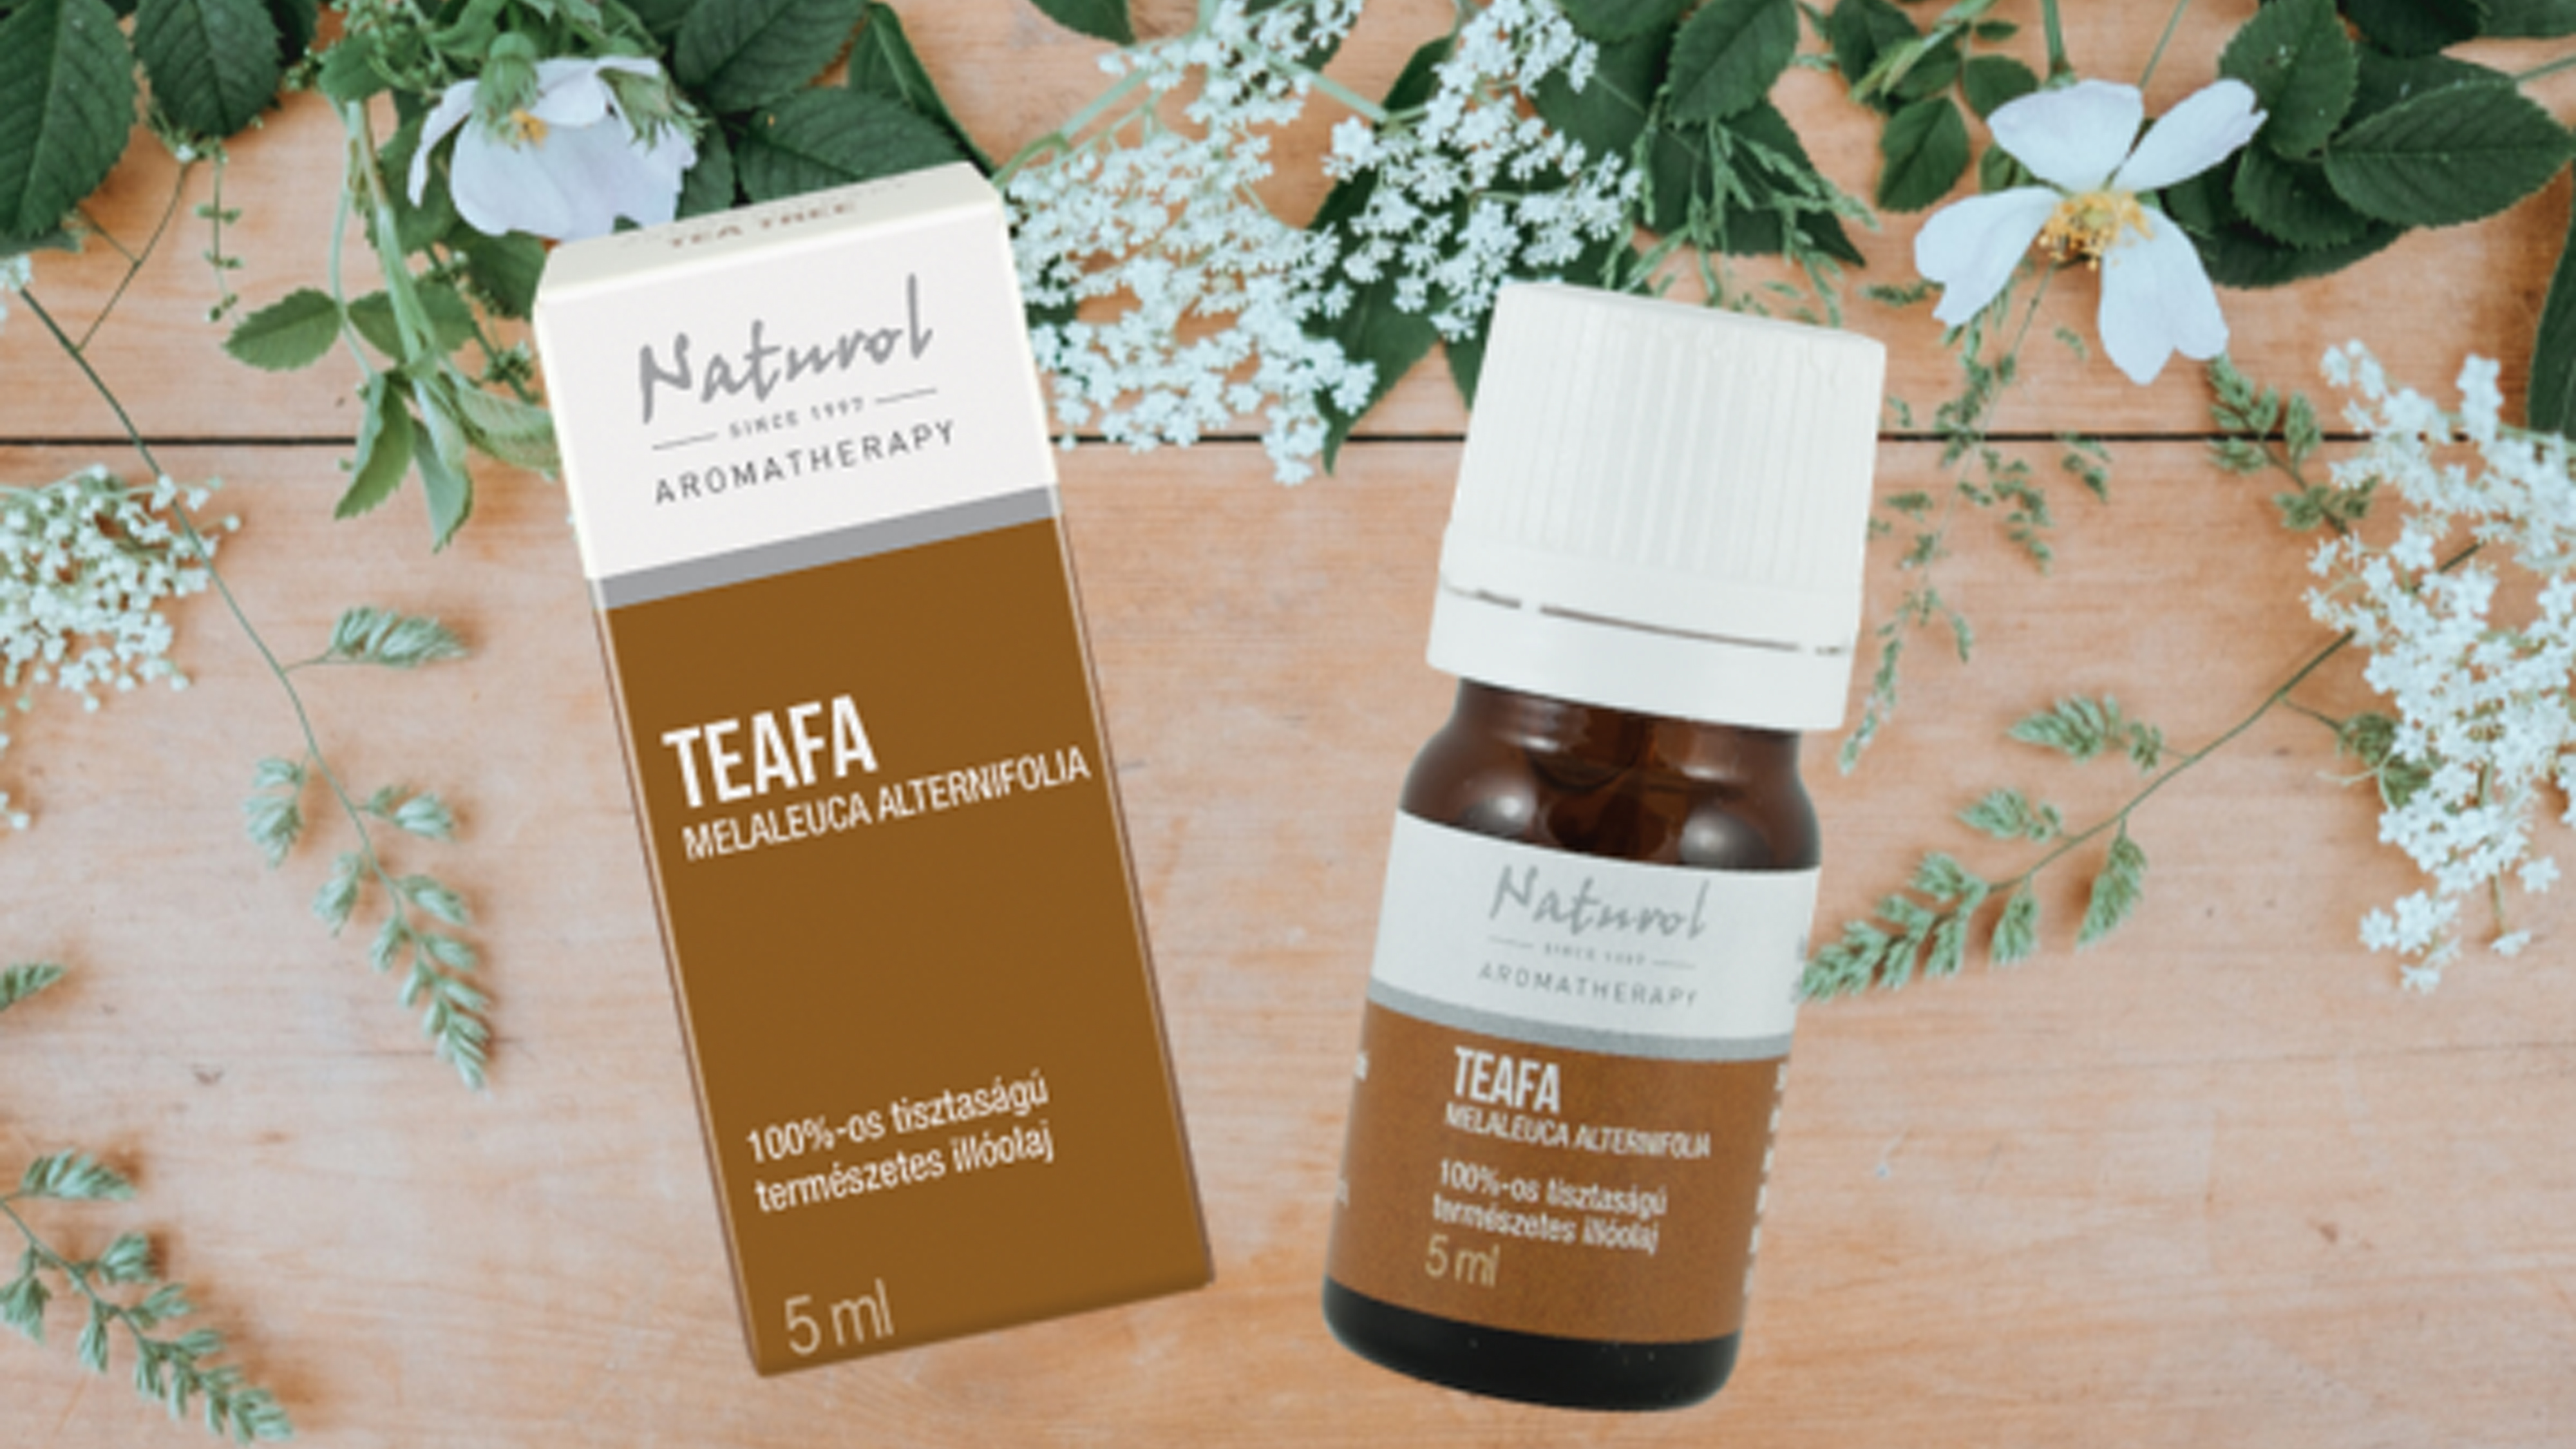 Fertőtlenítés a teafa erejével, avagy aromaterápia nyáron